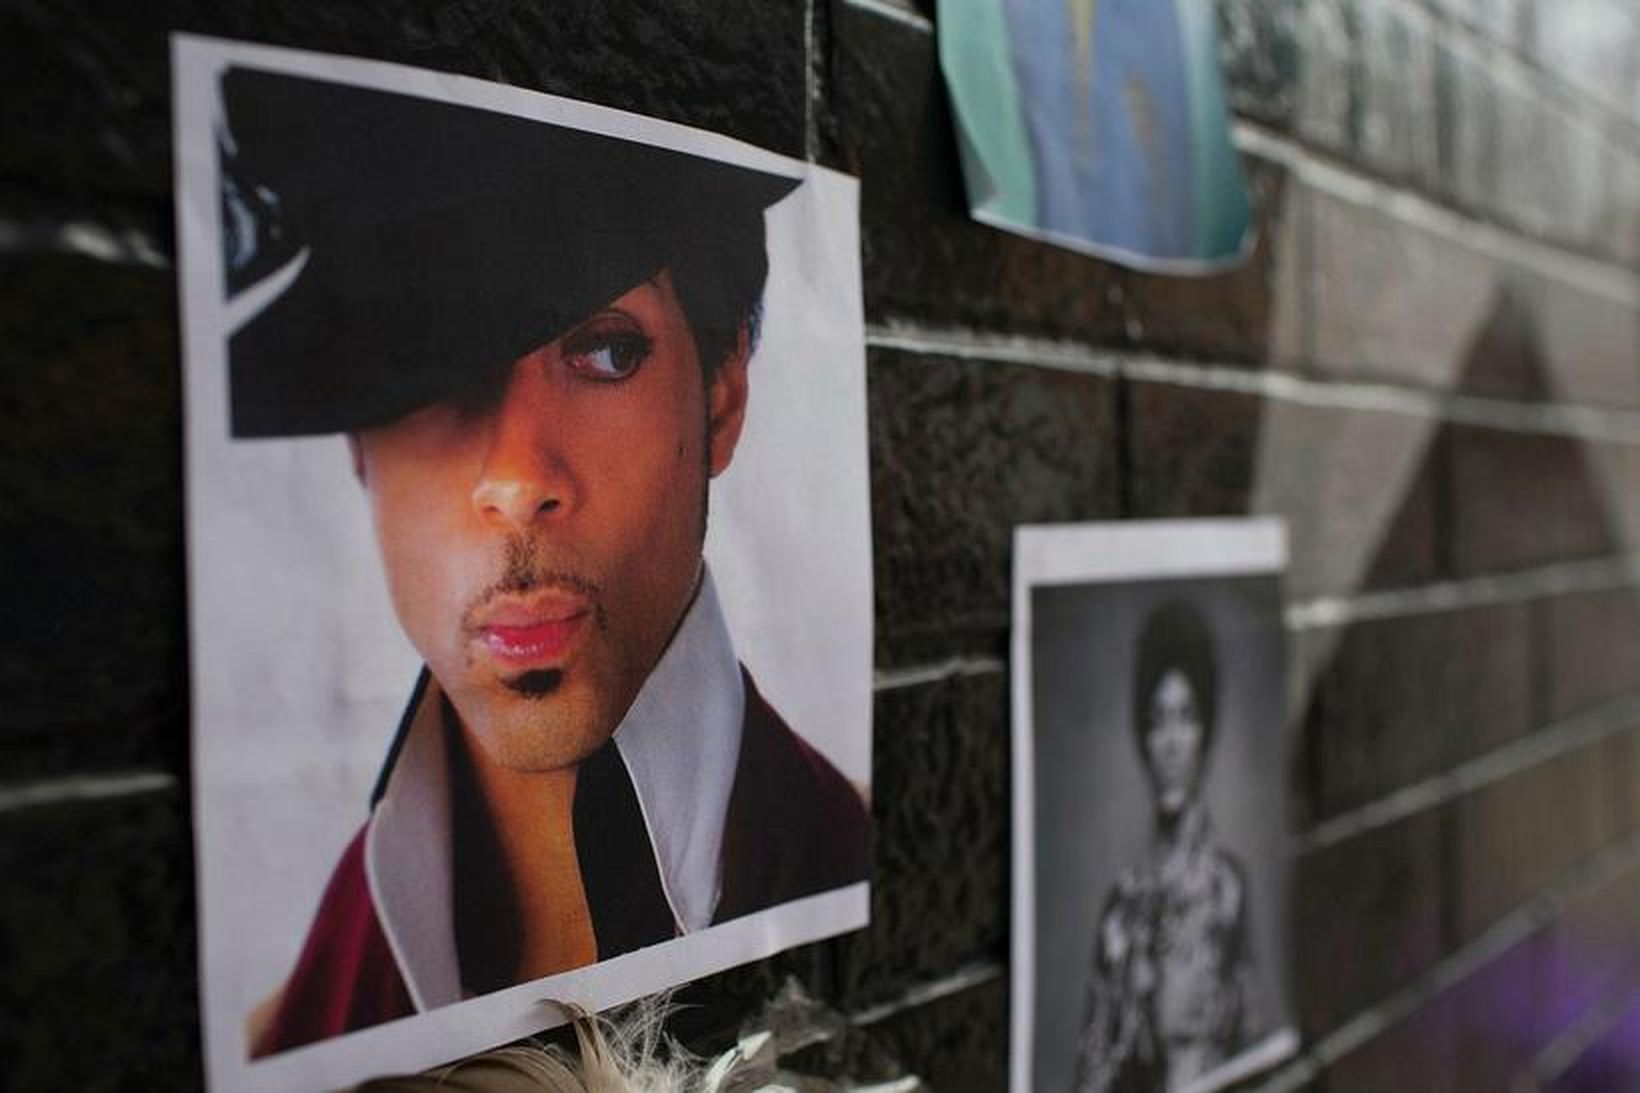 Prince fannst látinn á heimili sínu 21. apríl